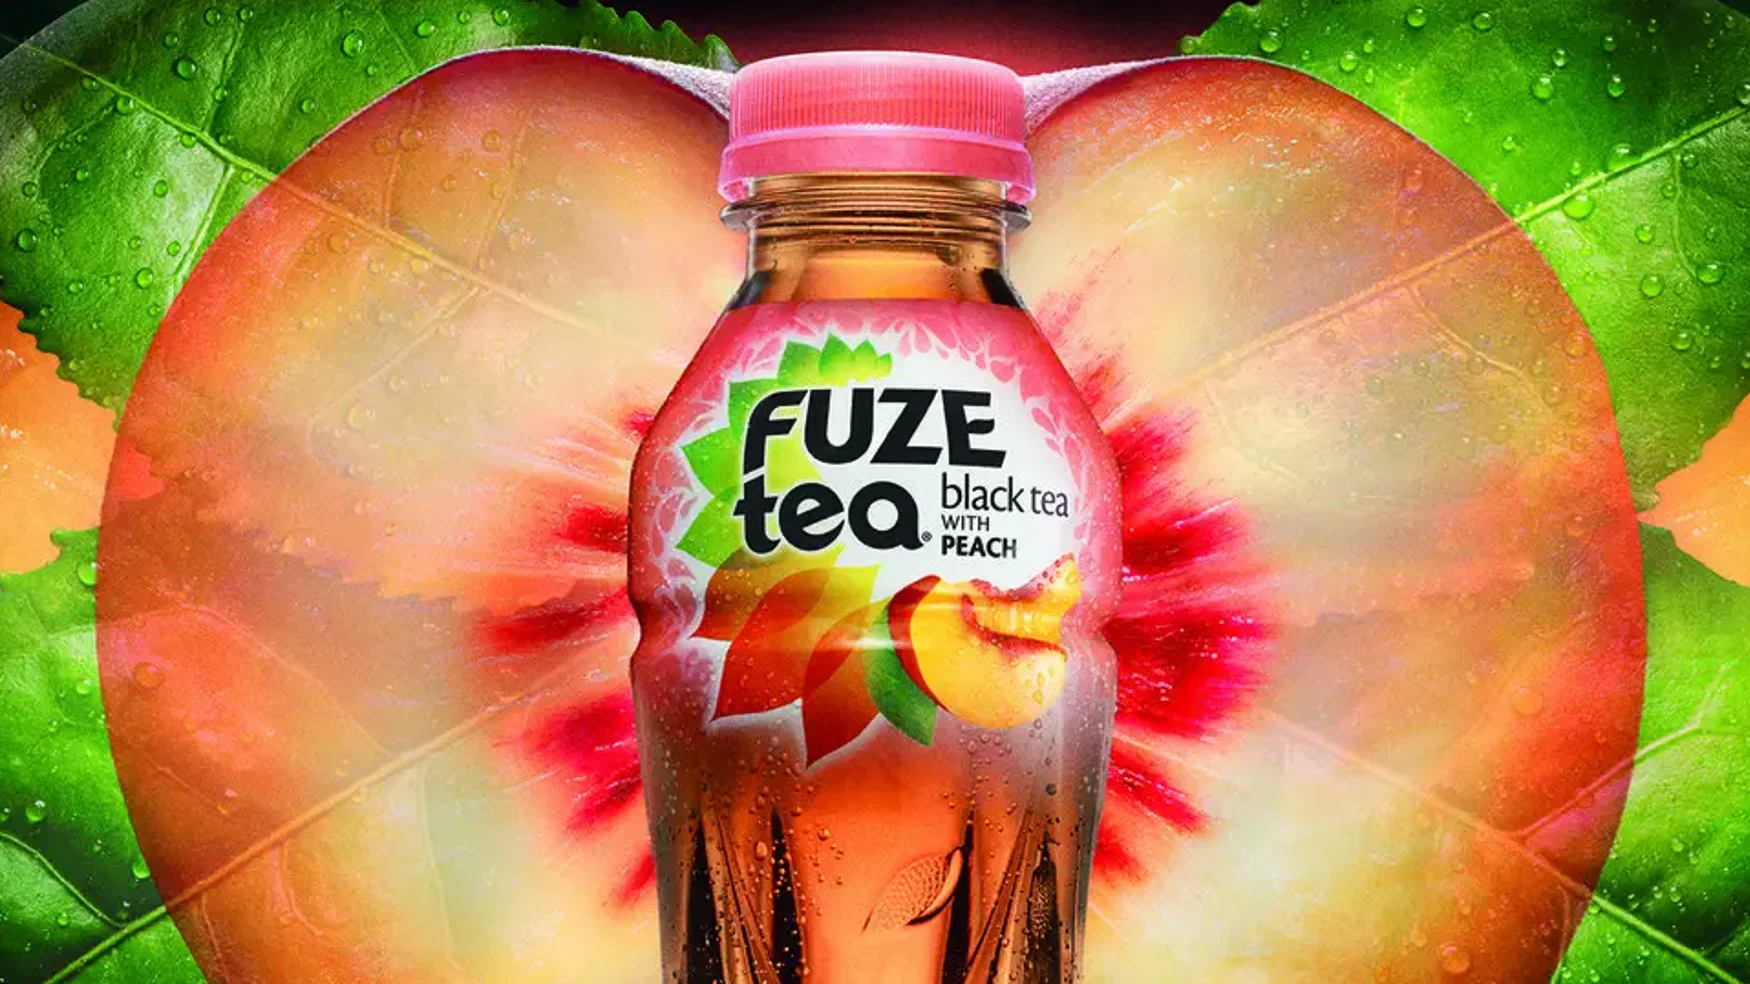 Coca-Cola Fuze Tea 30s global edit on Vimeo